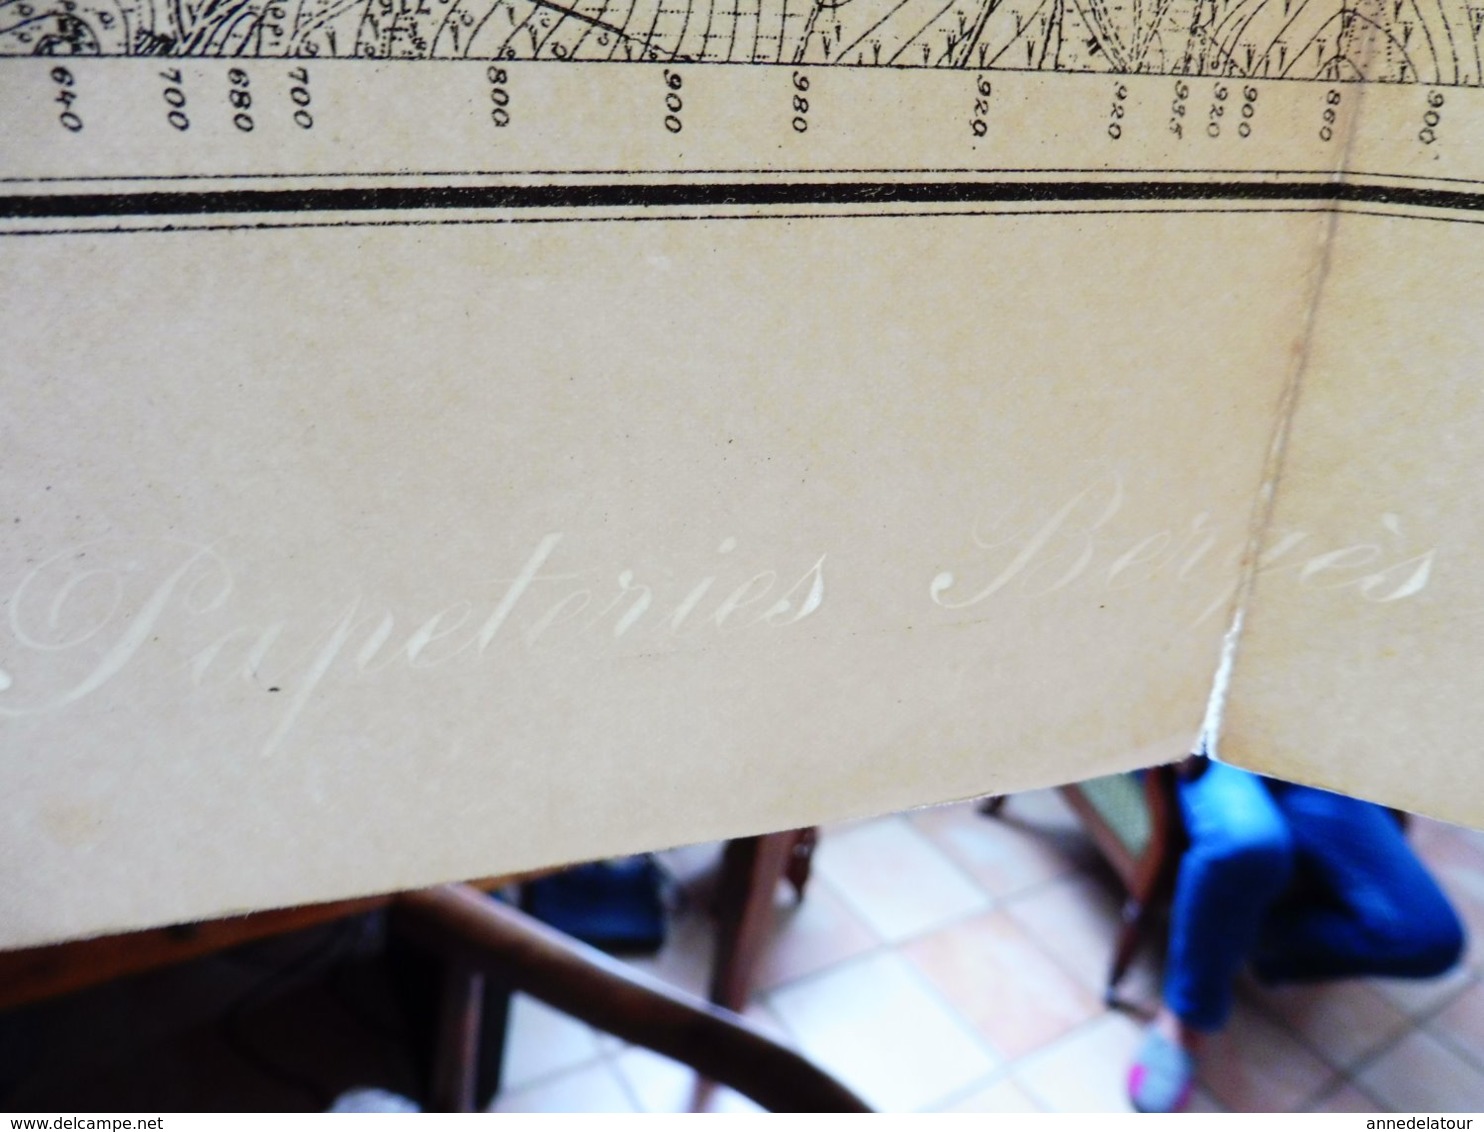 1886 Rare Carte De LAUTENBACH Filigrane PAPETERIE BERGES Suite Annexion ALSACE Par L'ALLEMAGNE (Hors-Tout = 64cm X 57cm) - Cartes Topographiques